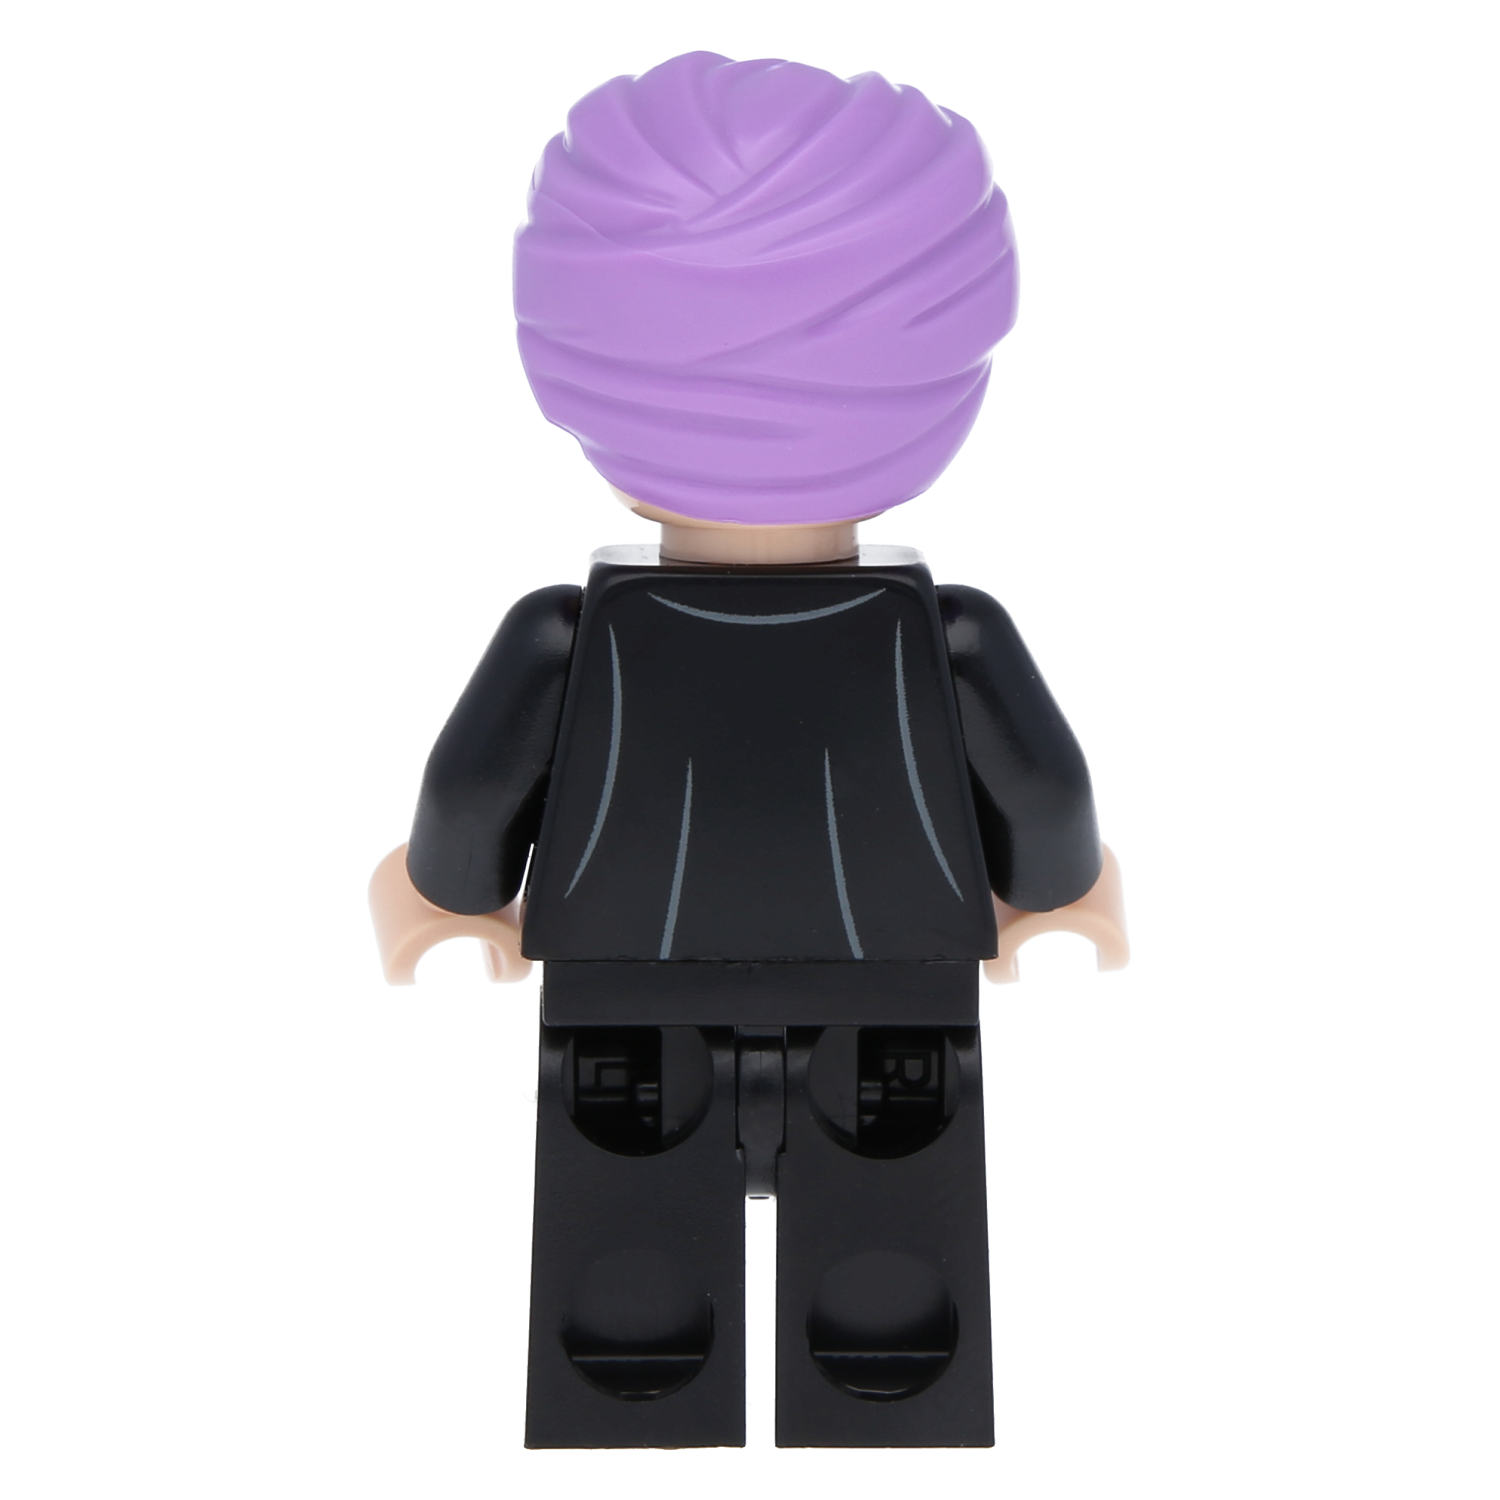 Lego Harry Potter Minifigure - Professor Quirinus Quirrell (Lavender Turban)